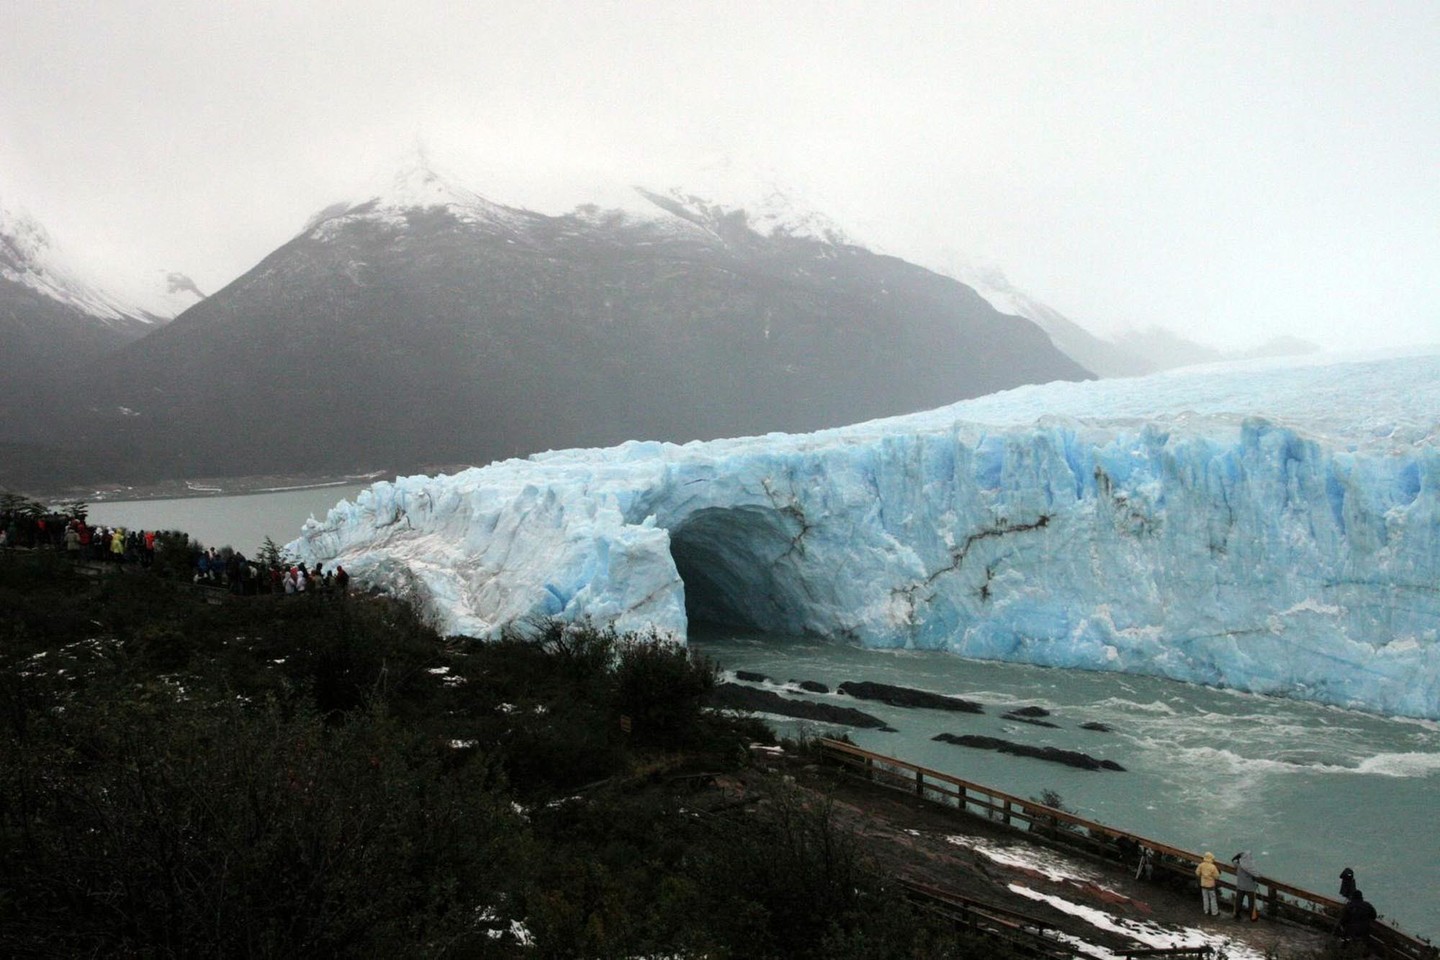  Pietų Amerikoje esantis Ledynų nacionalinis parkas - vienas didžiausių pasaulyje.<br> Scanpix nuotr.